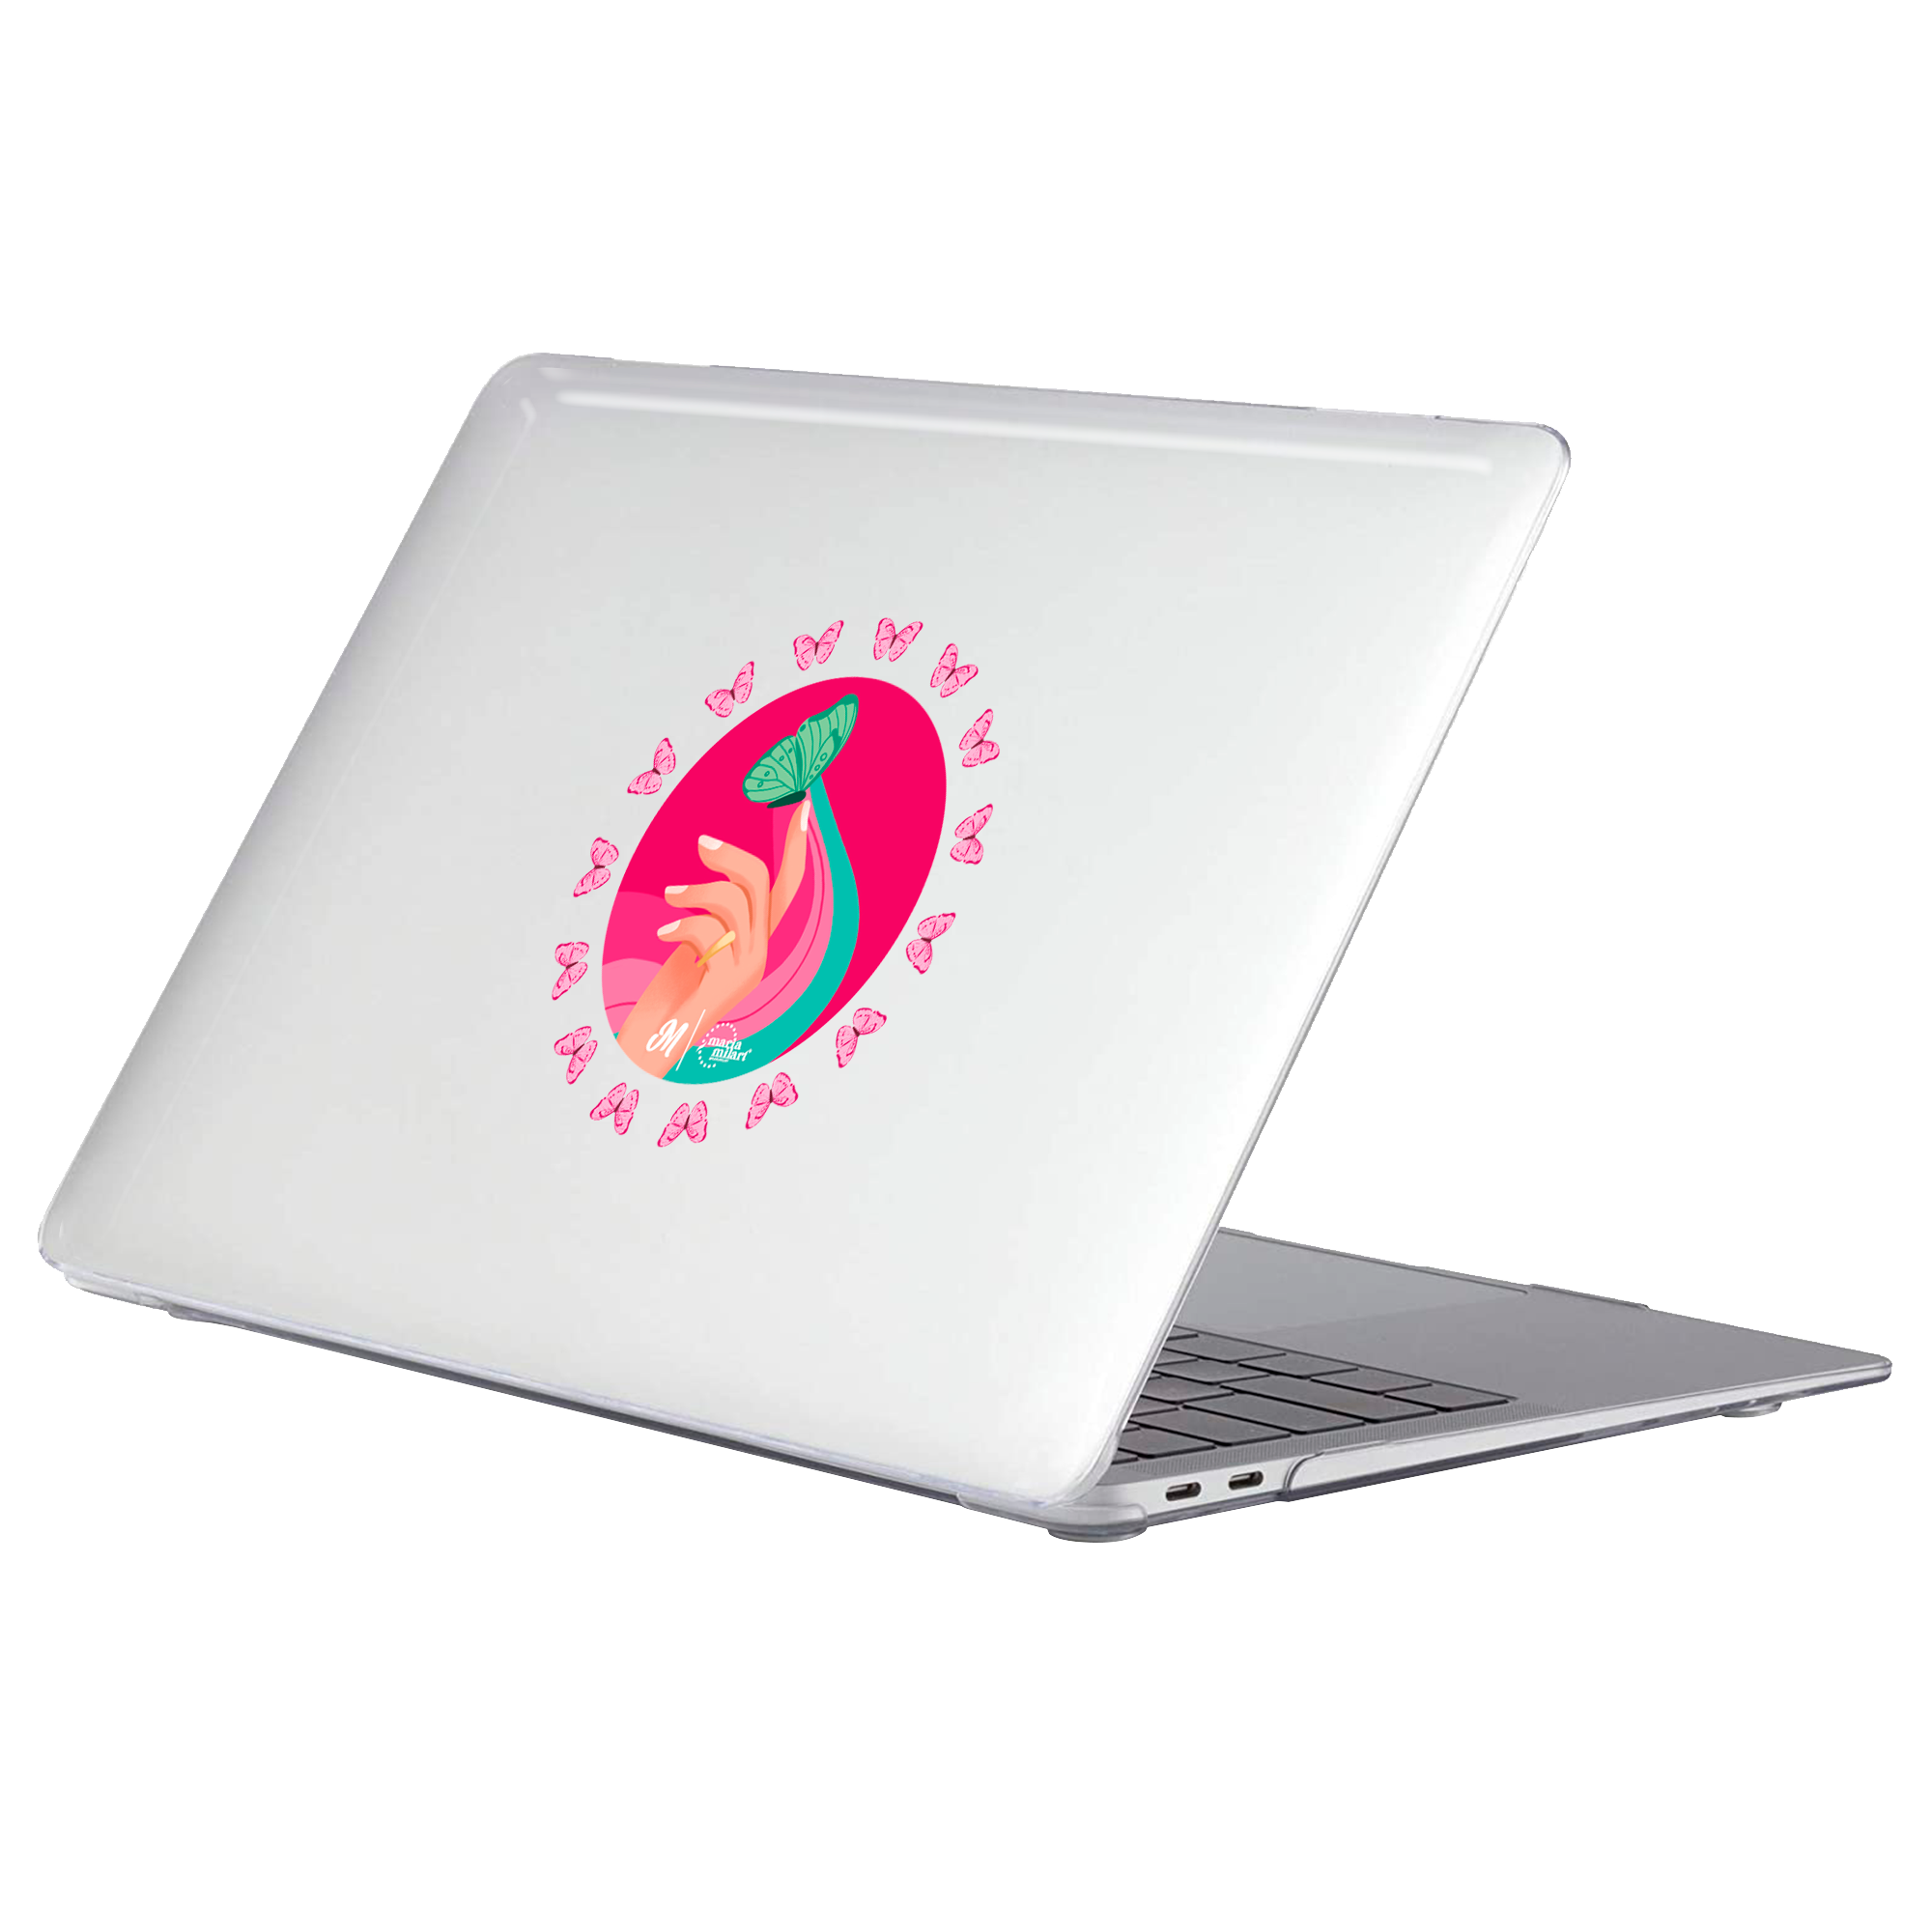 Quiai MacBook Case - Mandala Cases